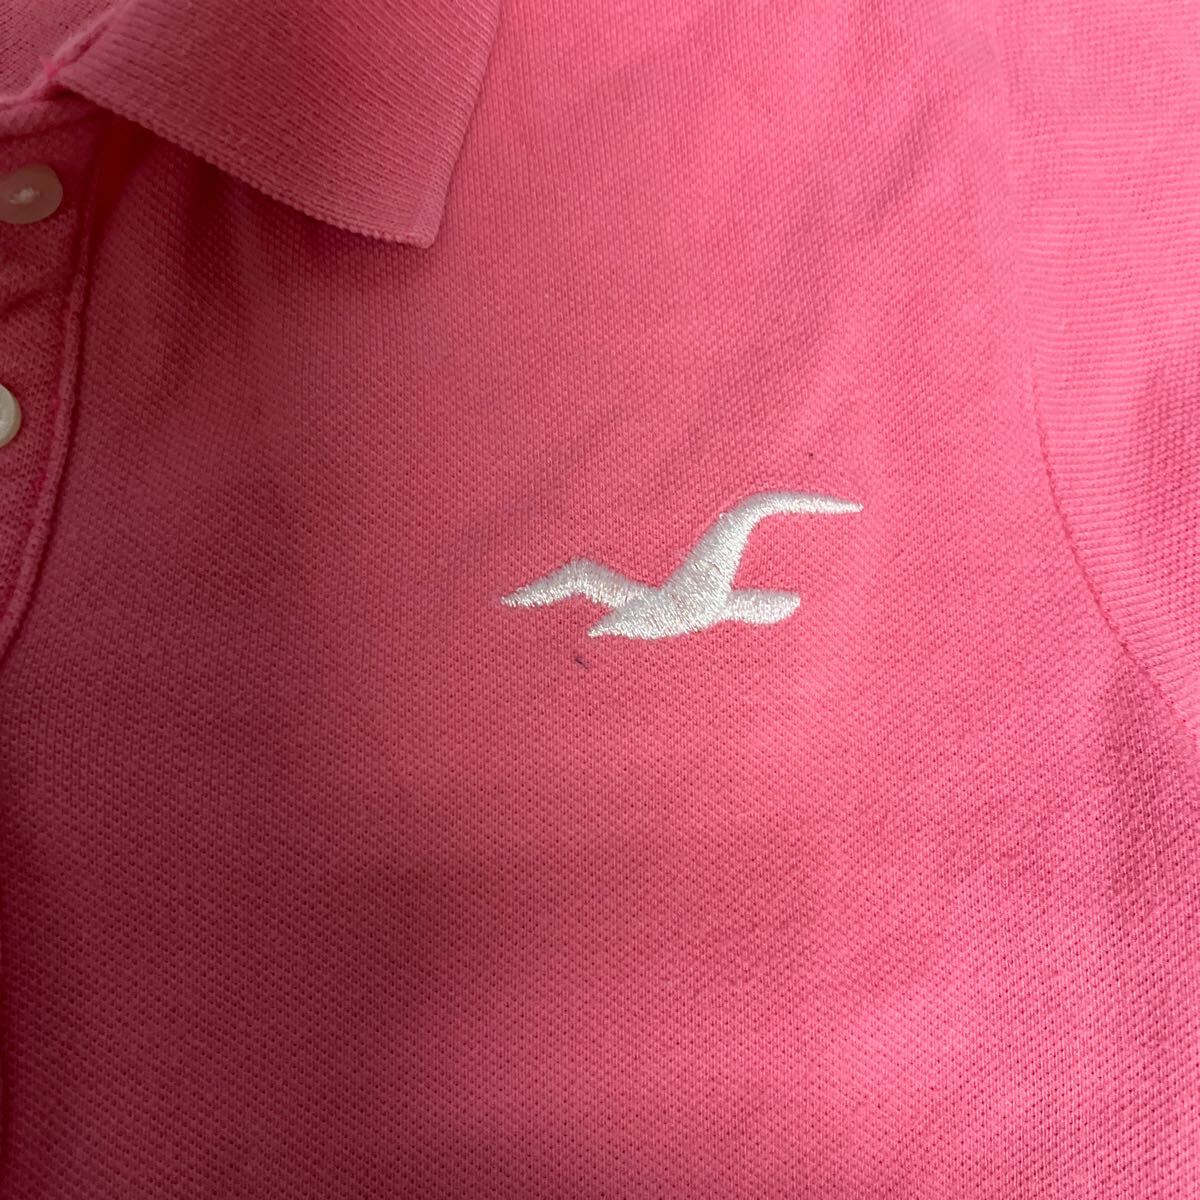  Hollister HOLLISTER рубашка-поло с коротким рукавом женский размер M розовый 